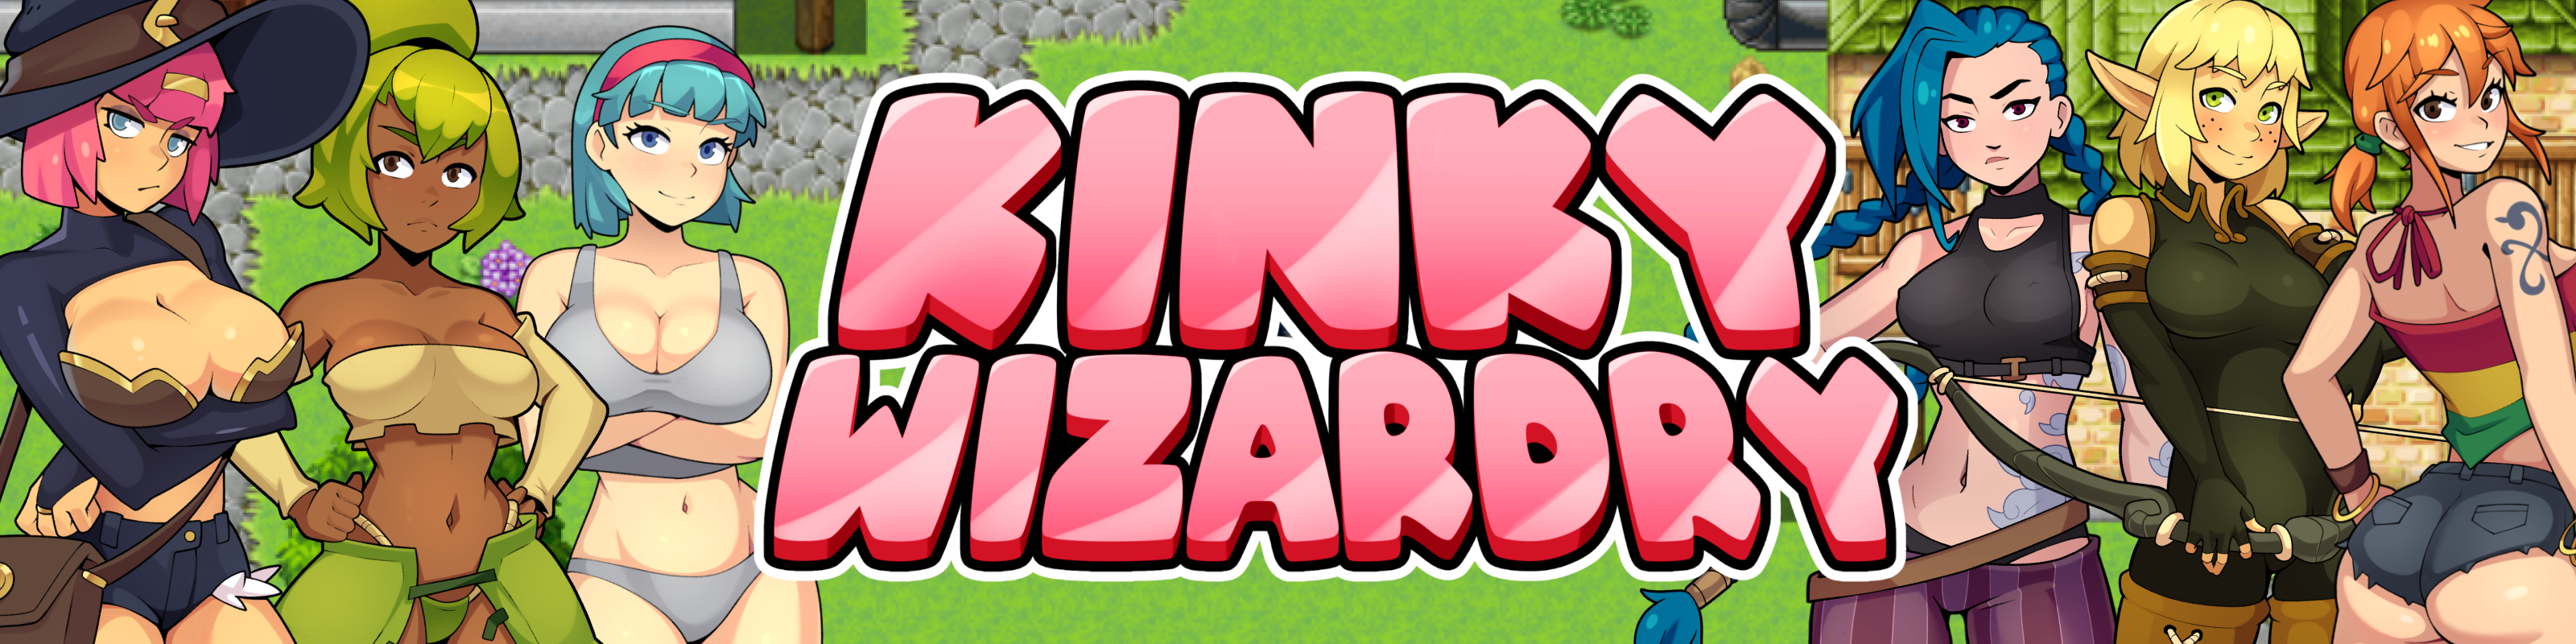 Kinky Wizardry by StinkStoneGames